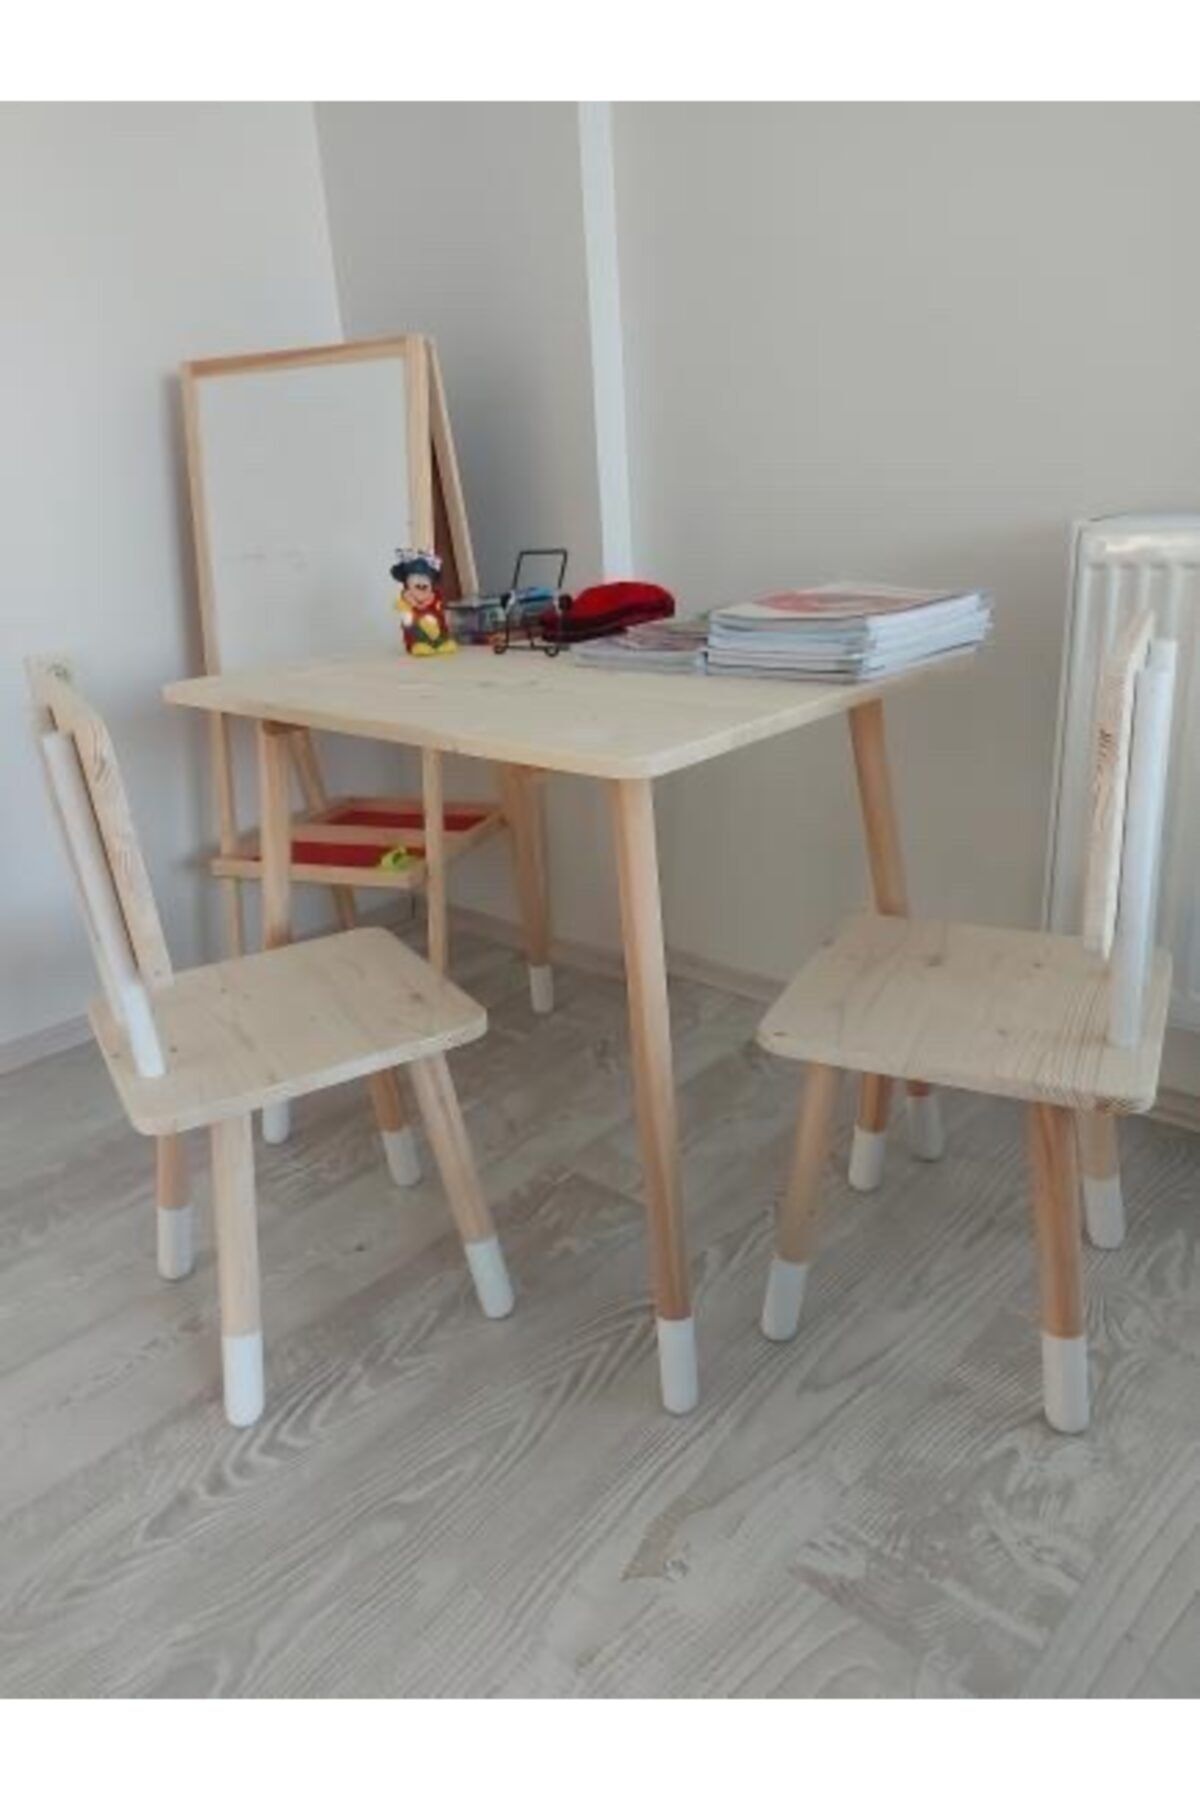 MrtAhşap Montessori Çalışma Masası Ve 2 Adet Sandalye (masif Ahşaptan)